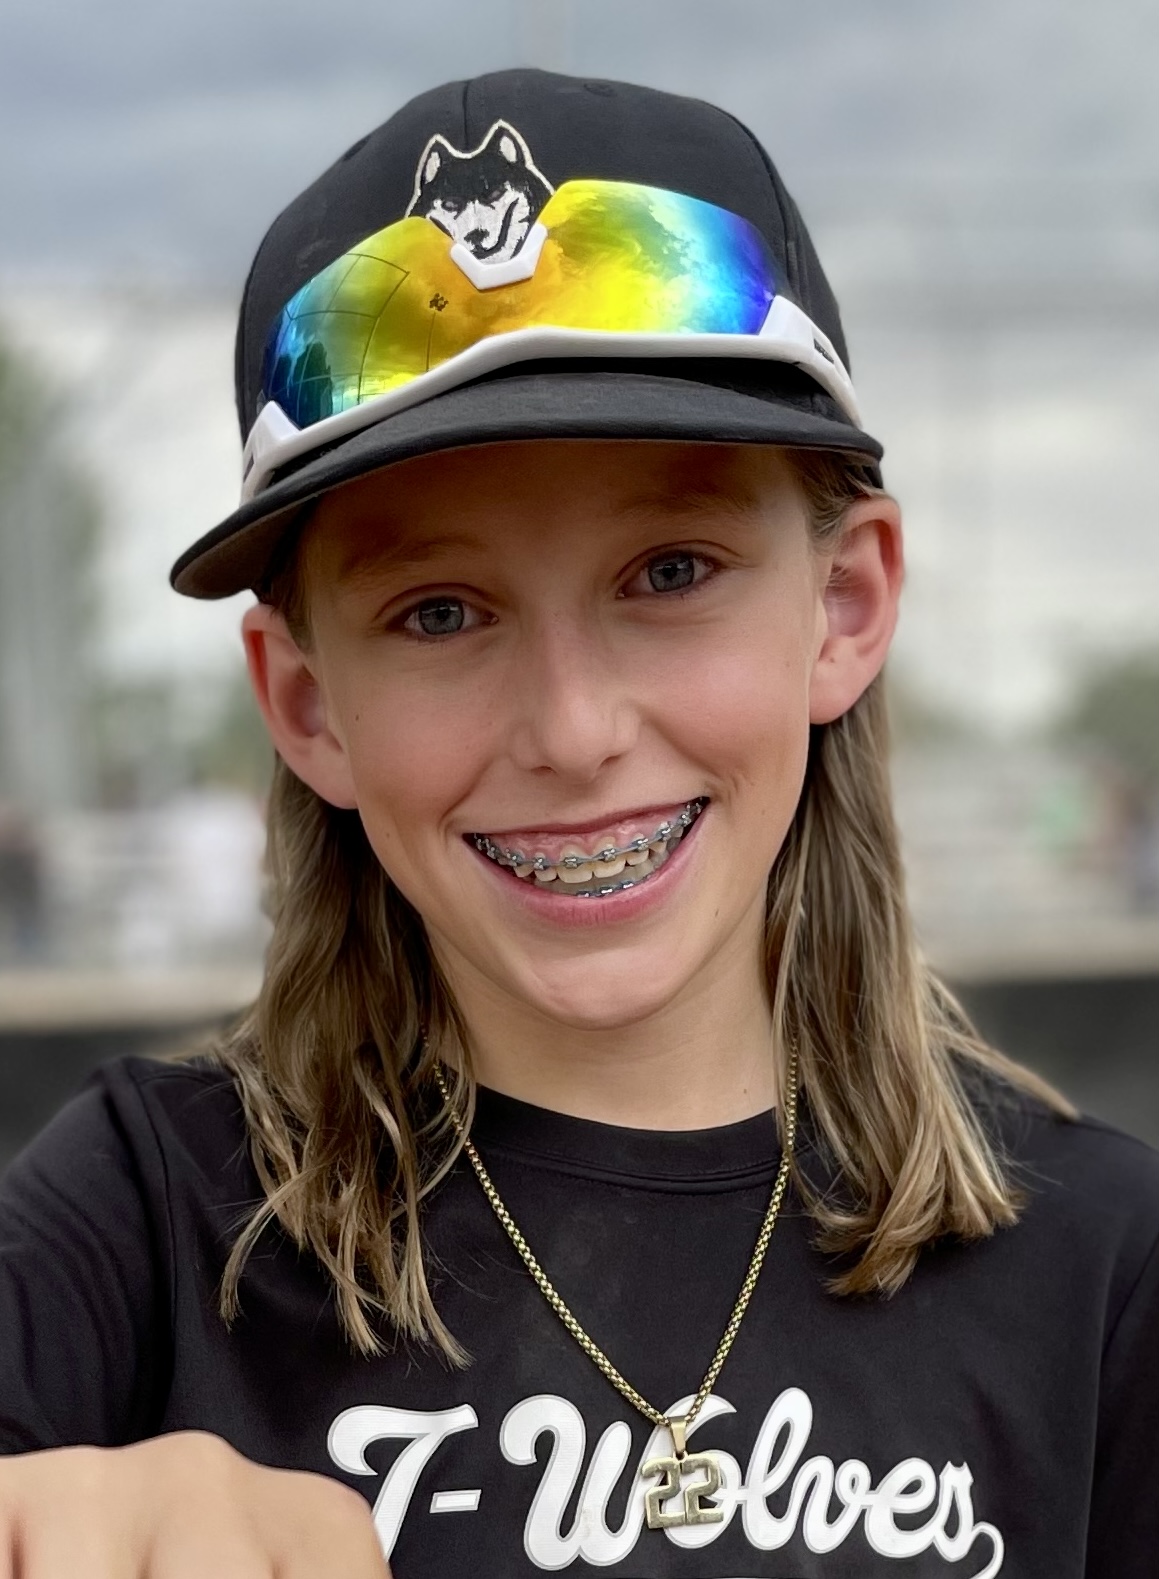 un niño con aparatos ortopédicos y cabello rubio hasta los hombros usa una gorra de béisbol